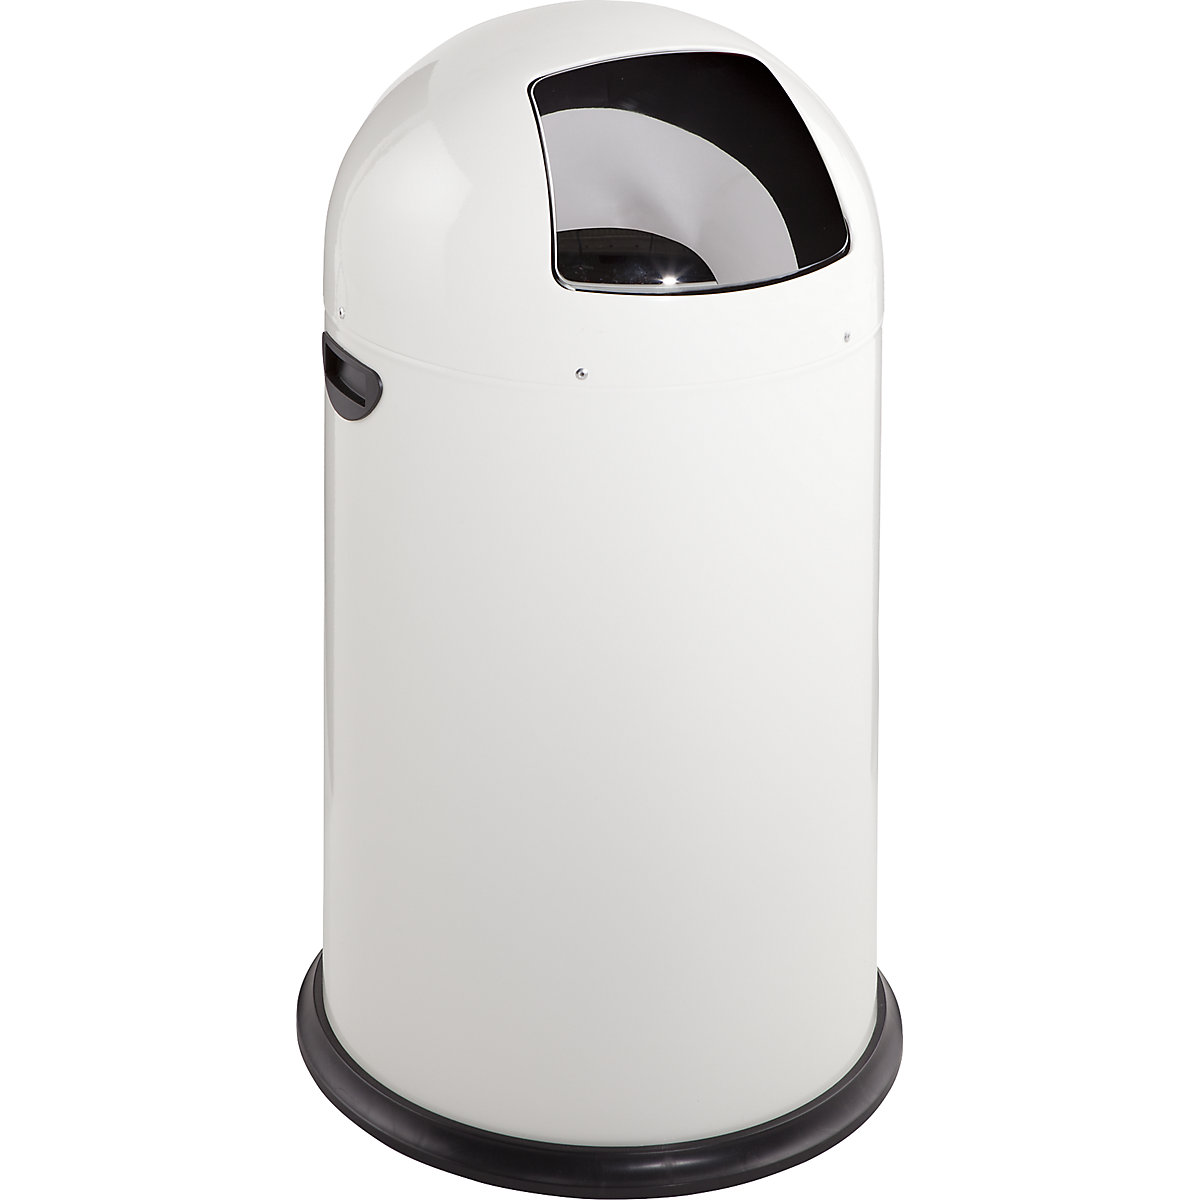 VAR – Odpadkový koš s funkcí Push, objem 40 l, výška 740 mm, bílá